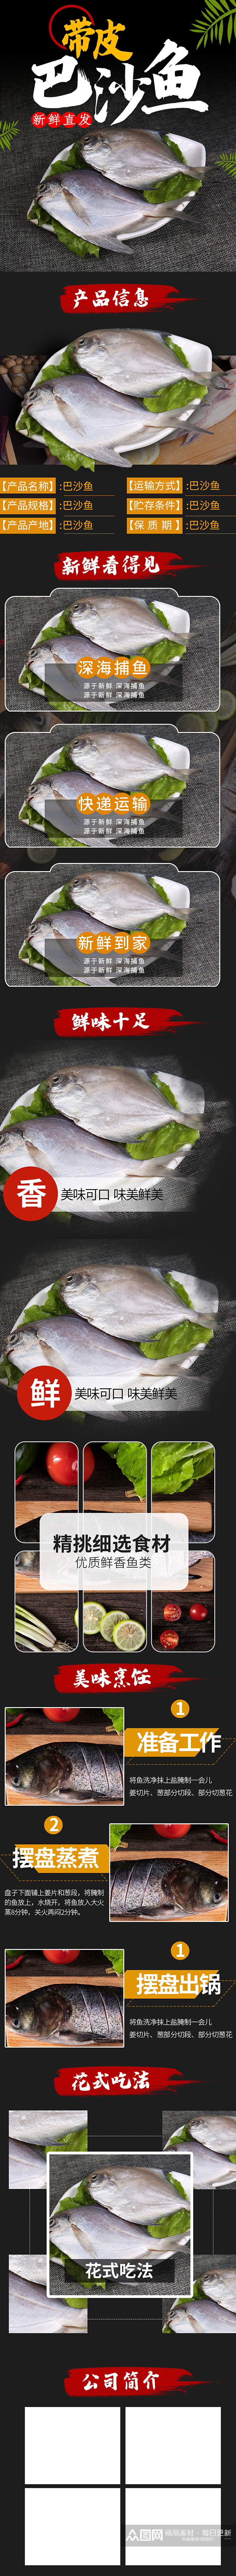 电商生鲜鱼类详情页素材